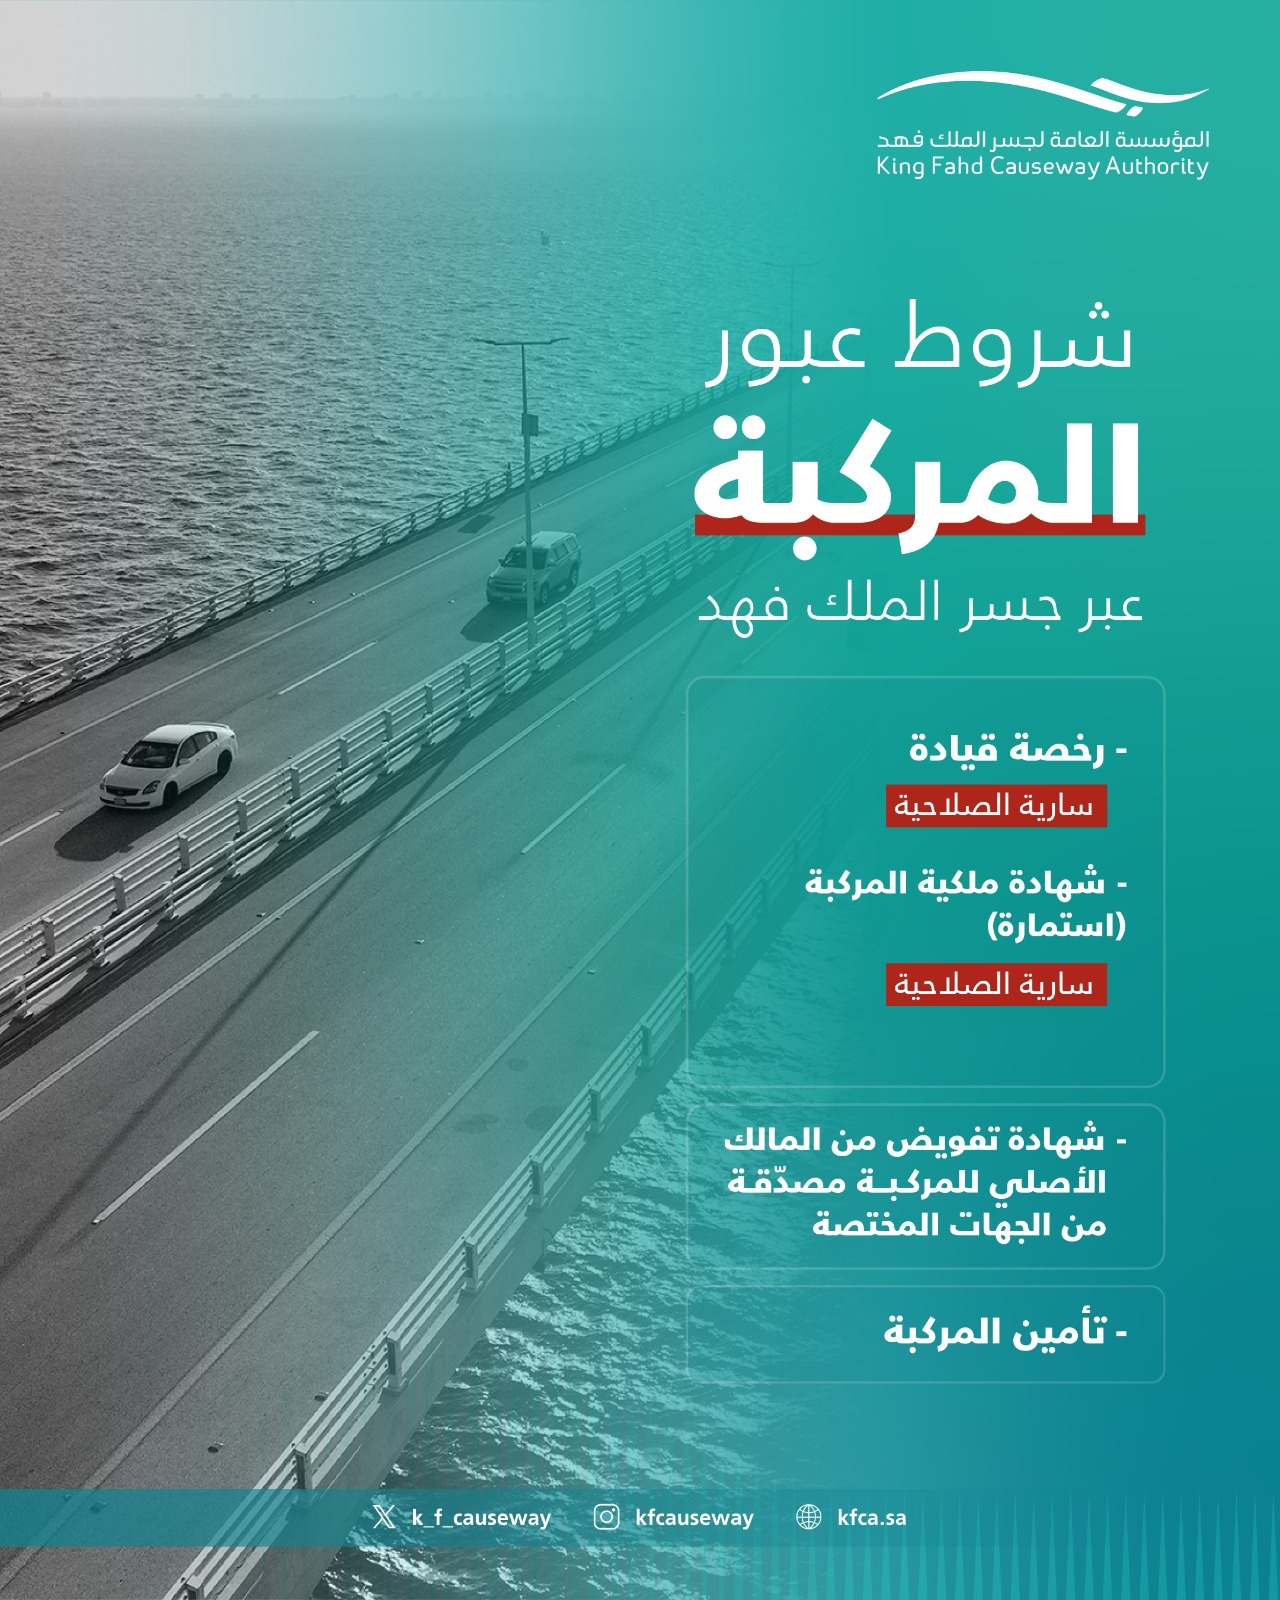 "مؤسسة جسر الملك فهد" توضح شروط عبور المركبة للجسر 8